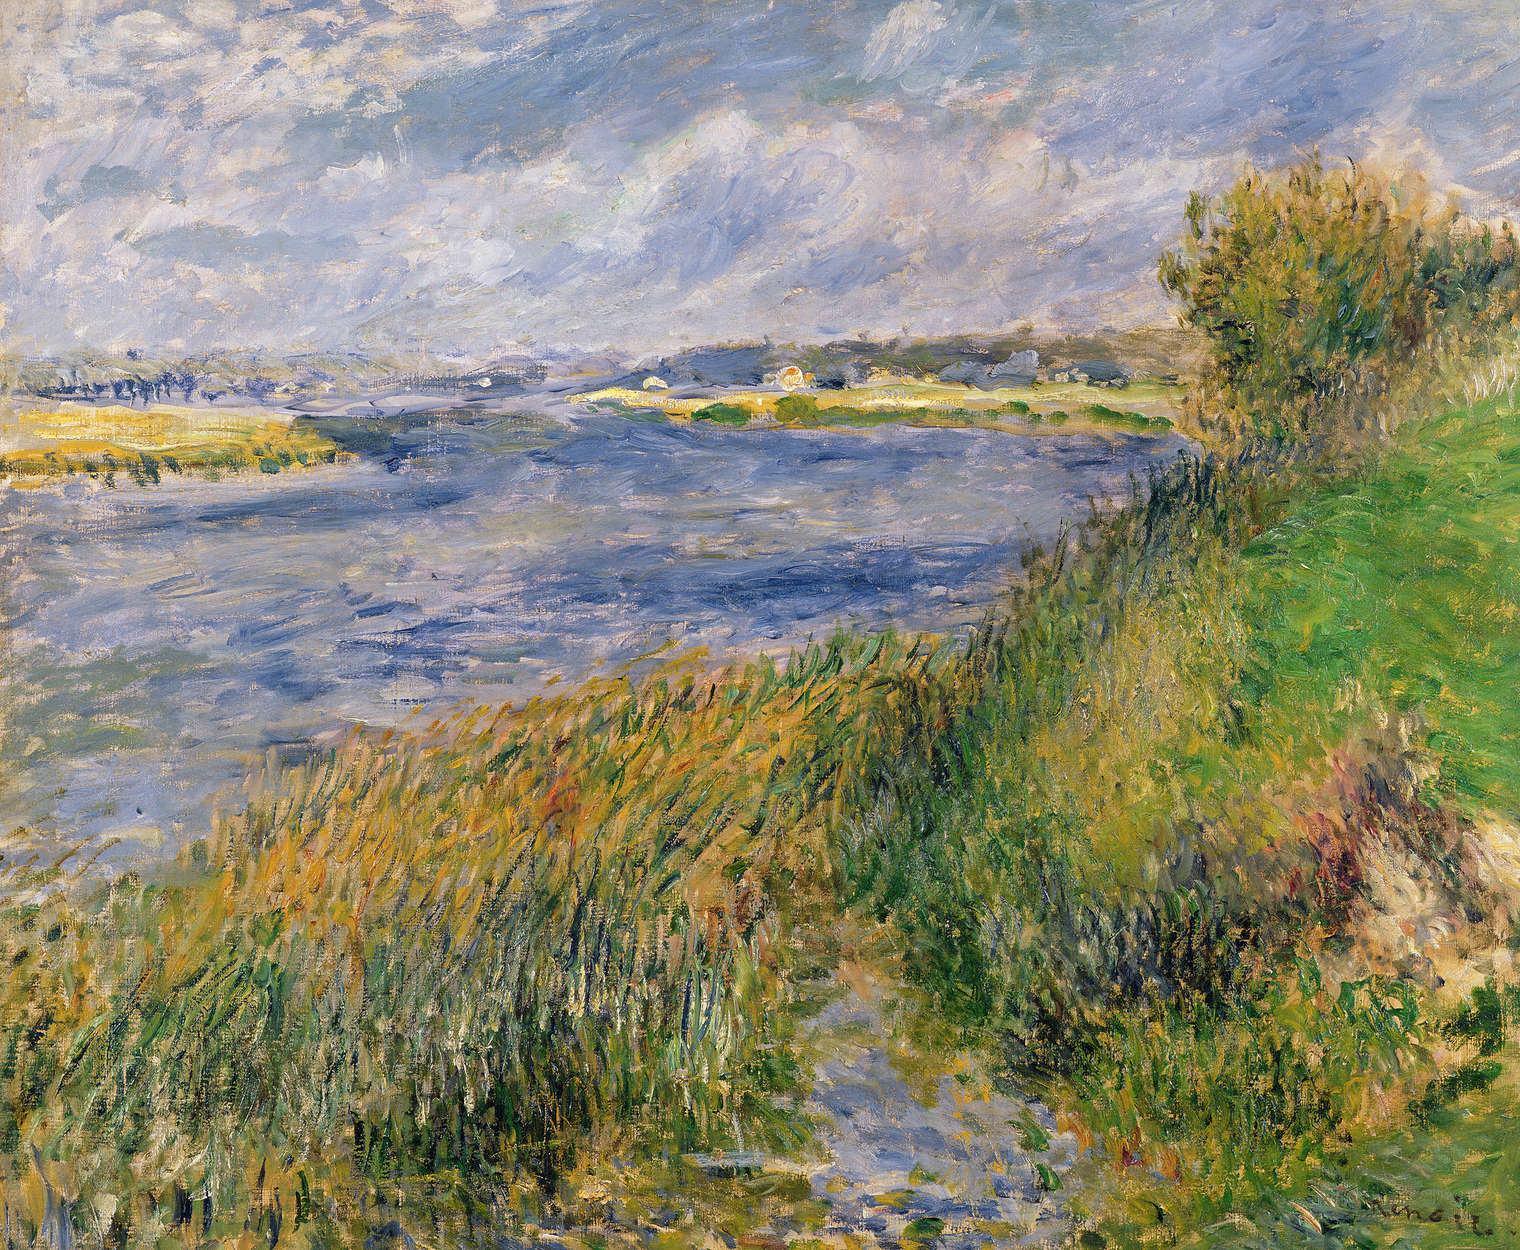             Papier peint panoramique "Les bords de Seine à Champrosay" de Pierre Auguste Renoir
        